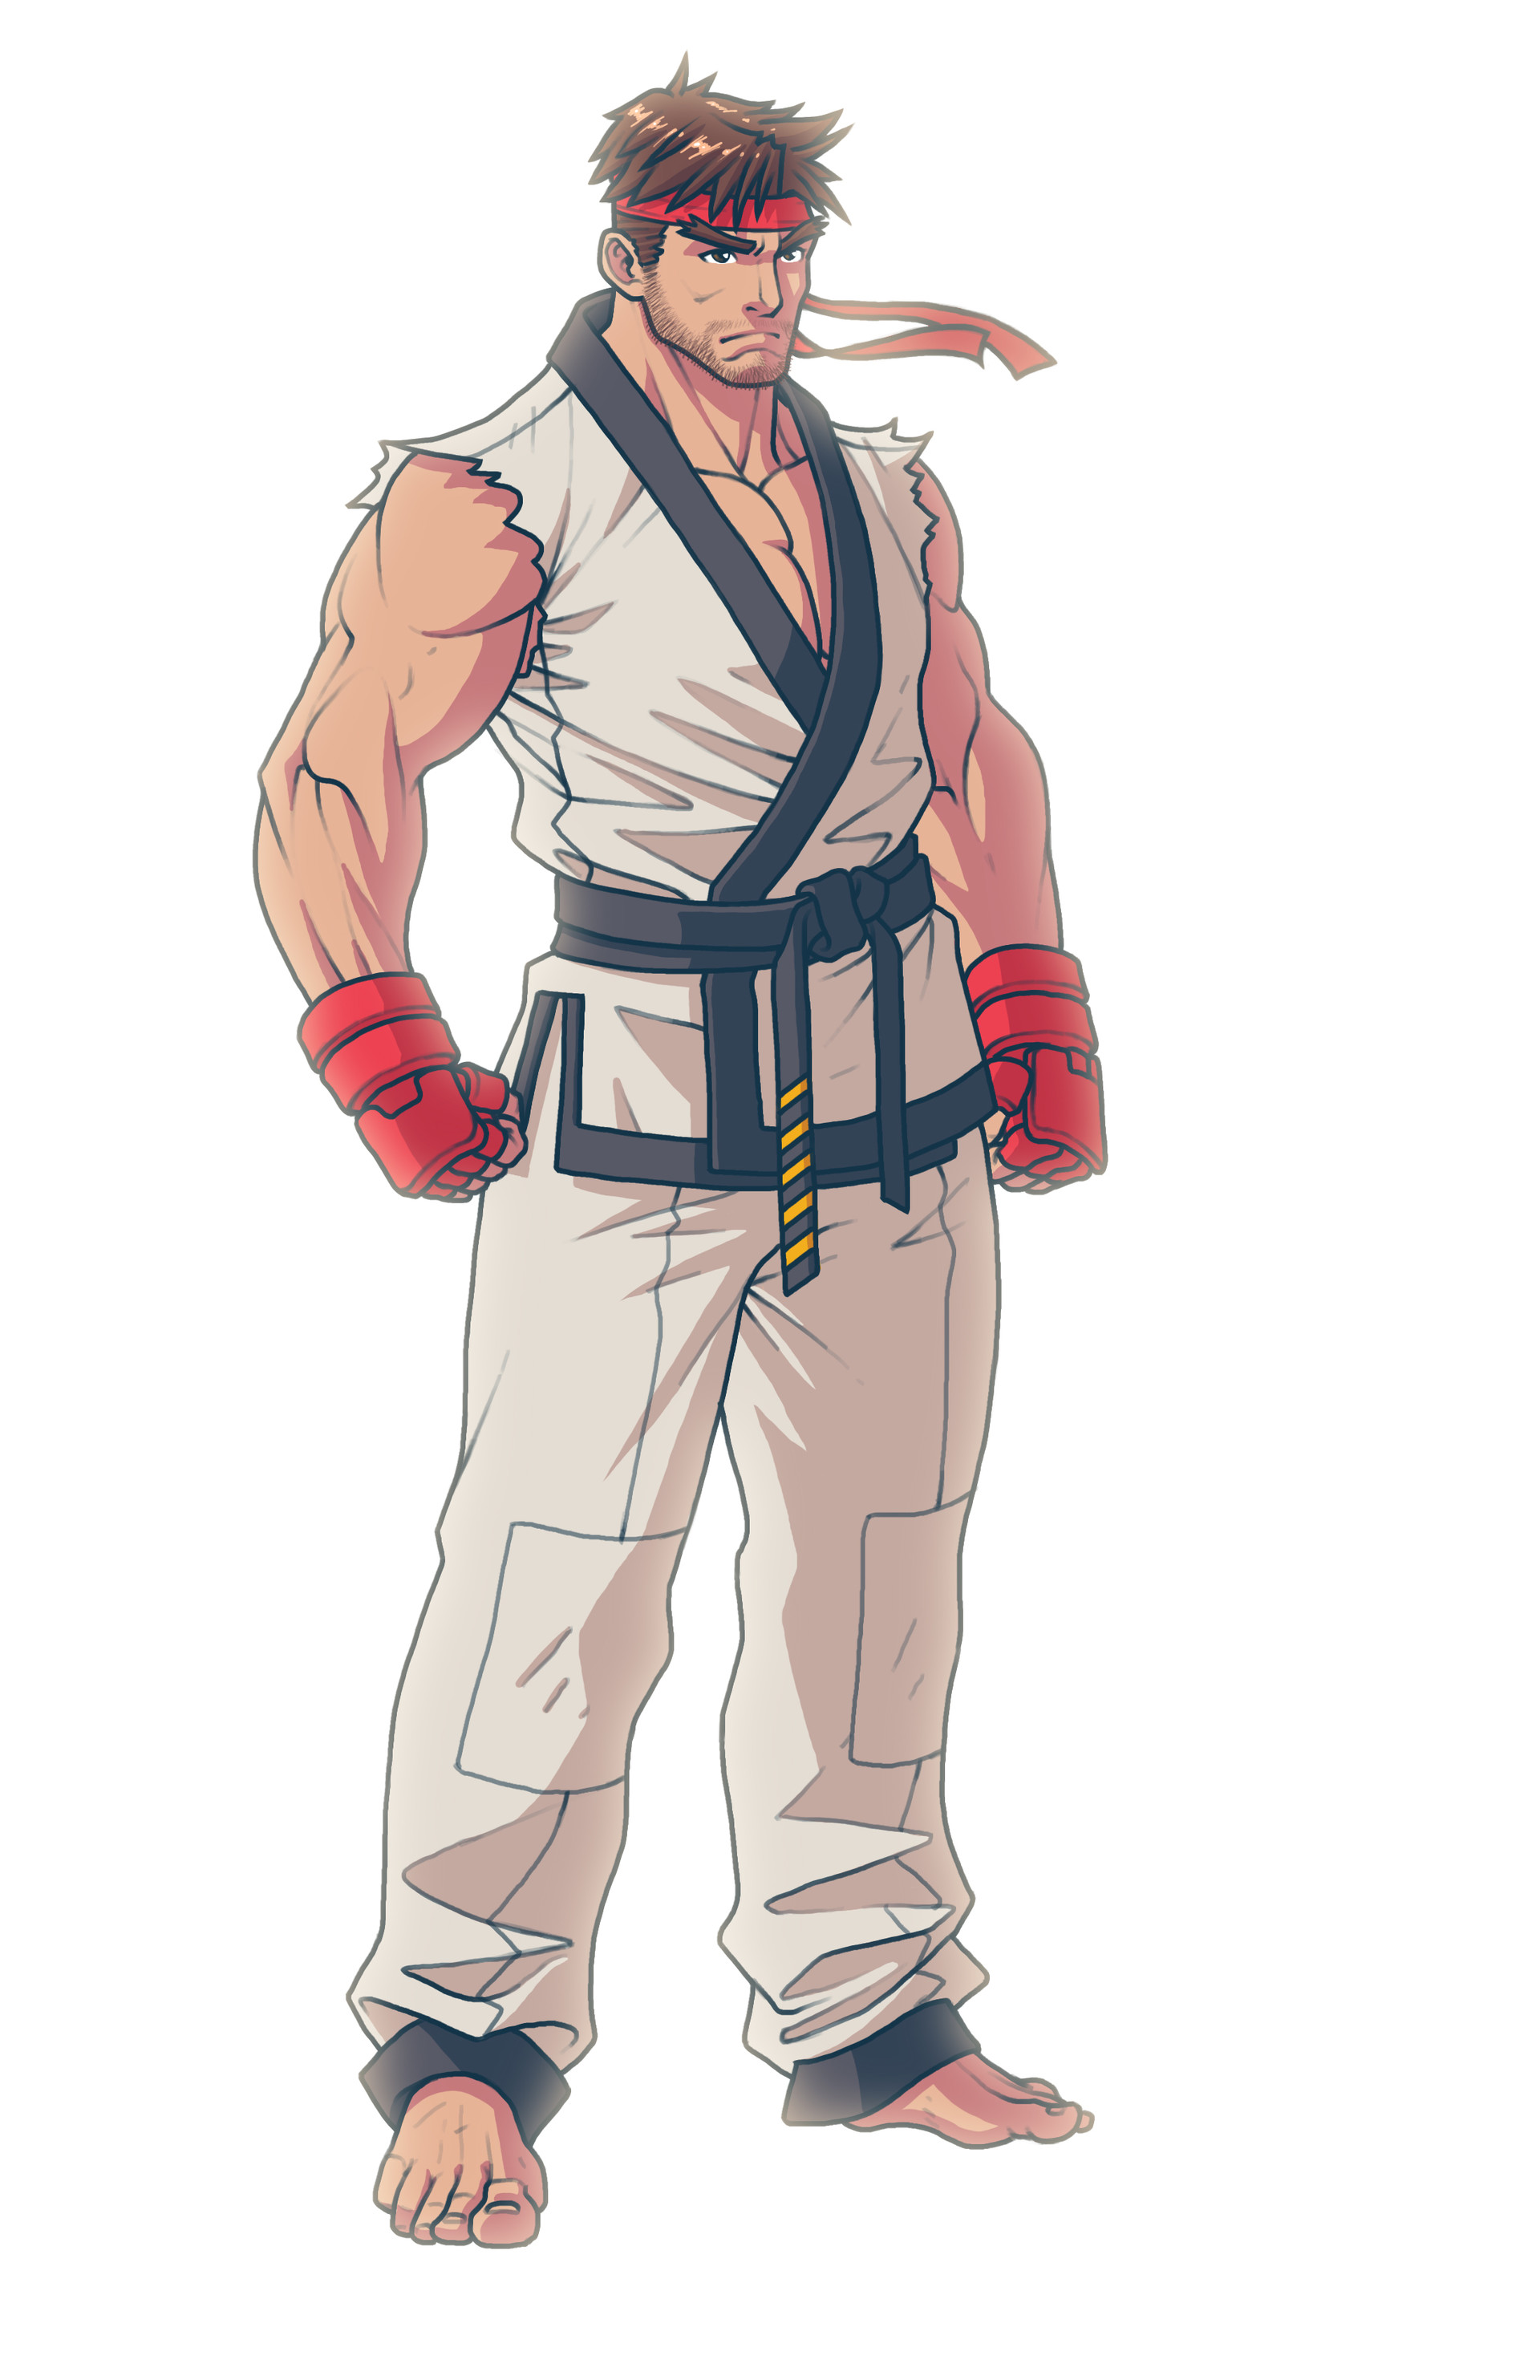 ArtStation - Ryu Street Fighter, Concept Art